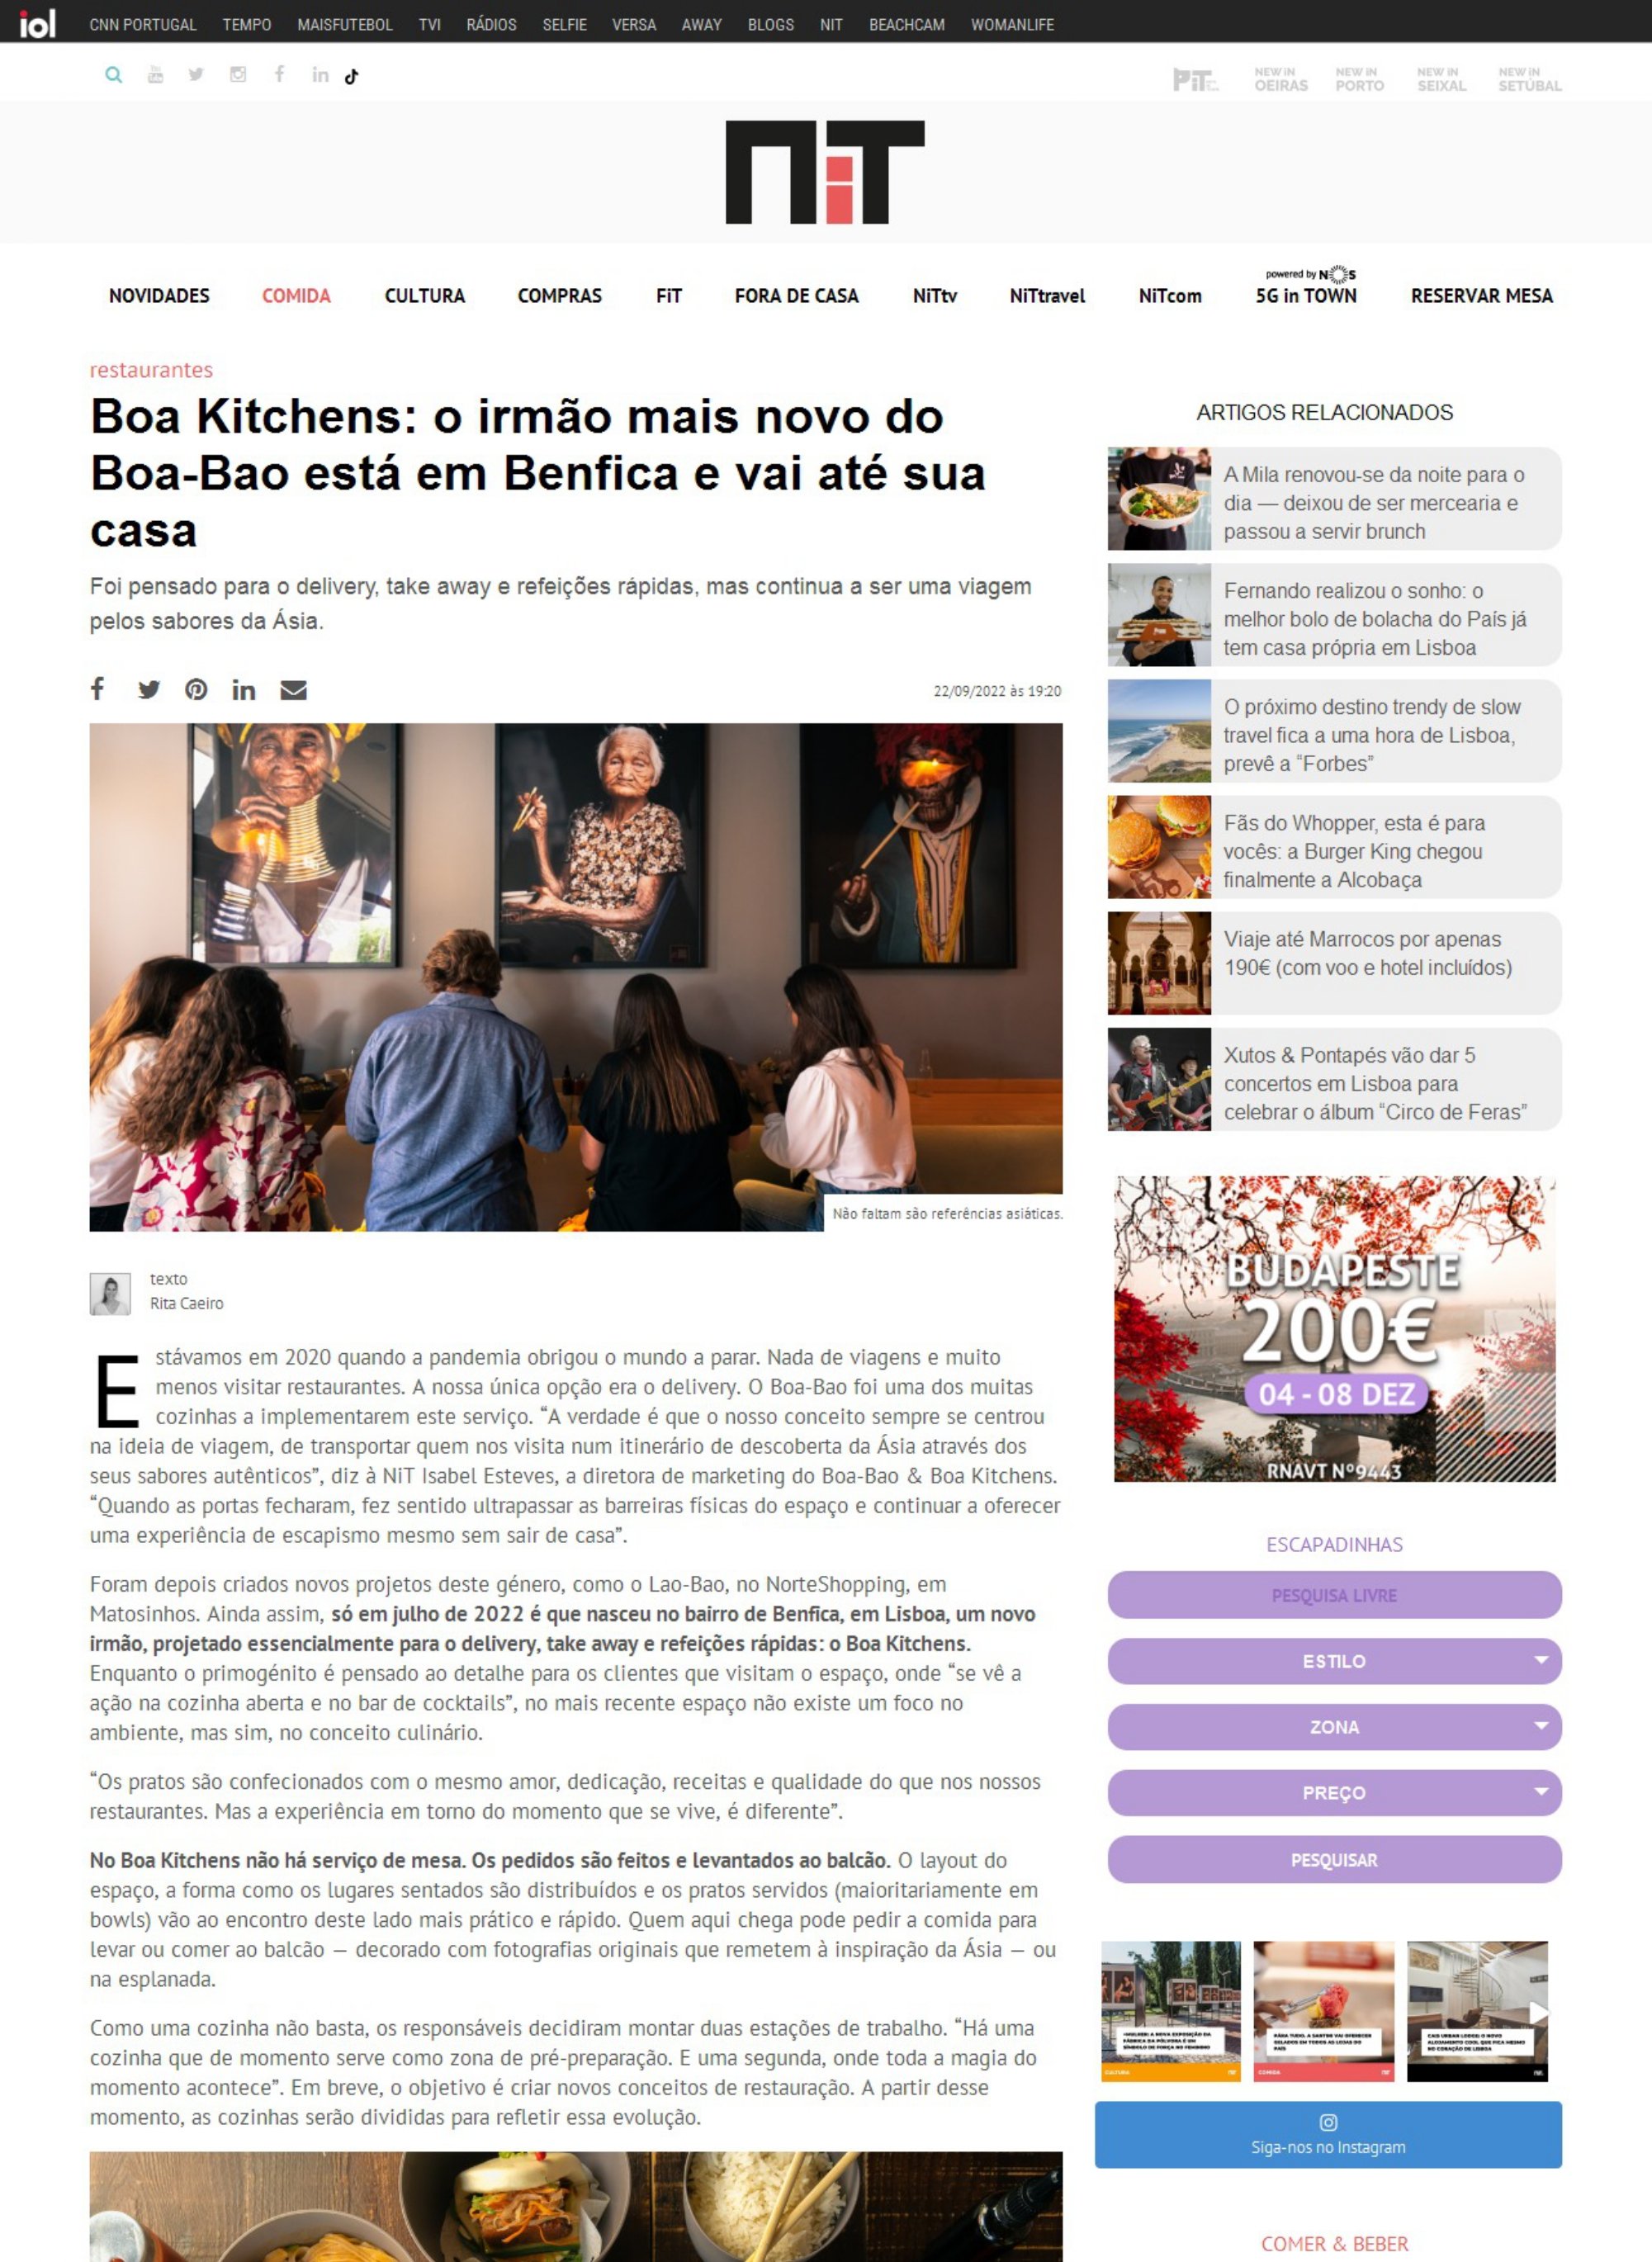 NIT_Boa Cocinas, el hermano menor de Boa-Bao está en Benfica y va a su casa_page-0001.jpg